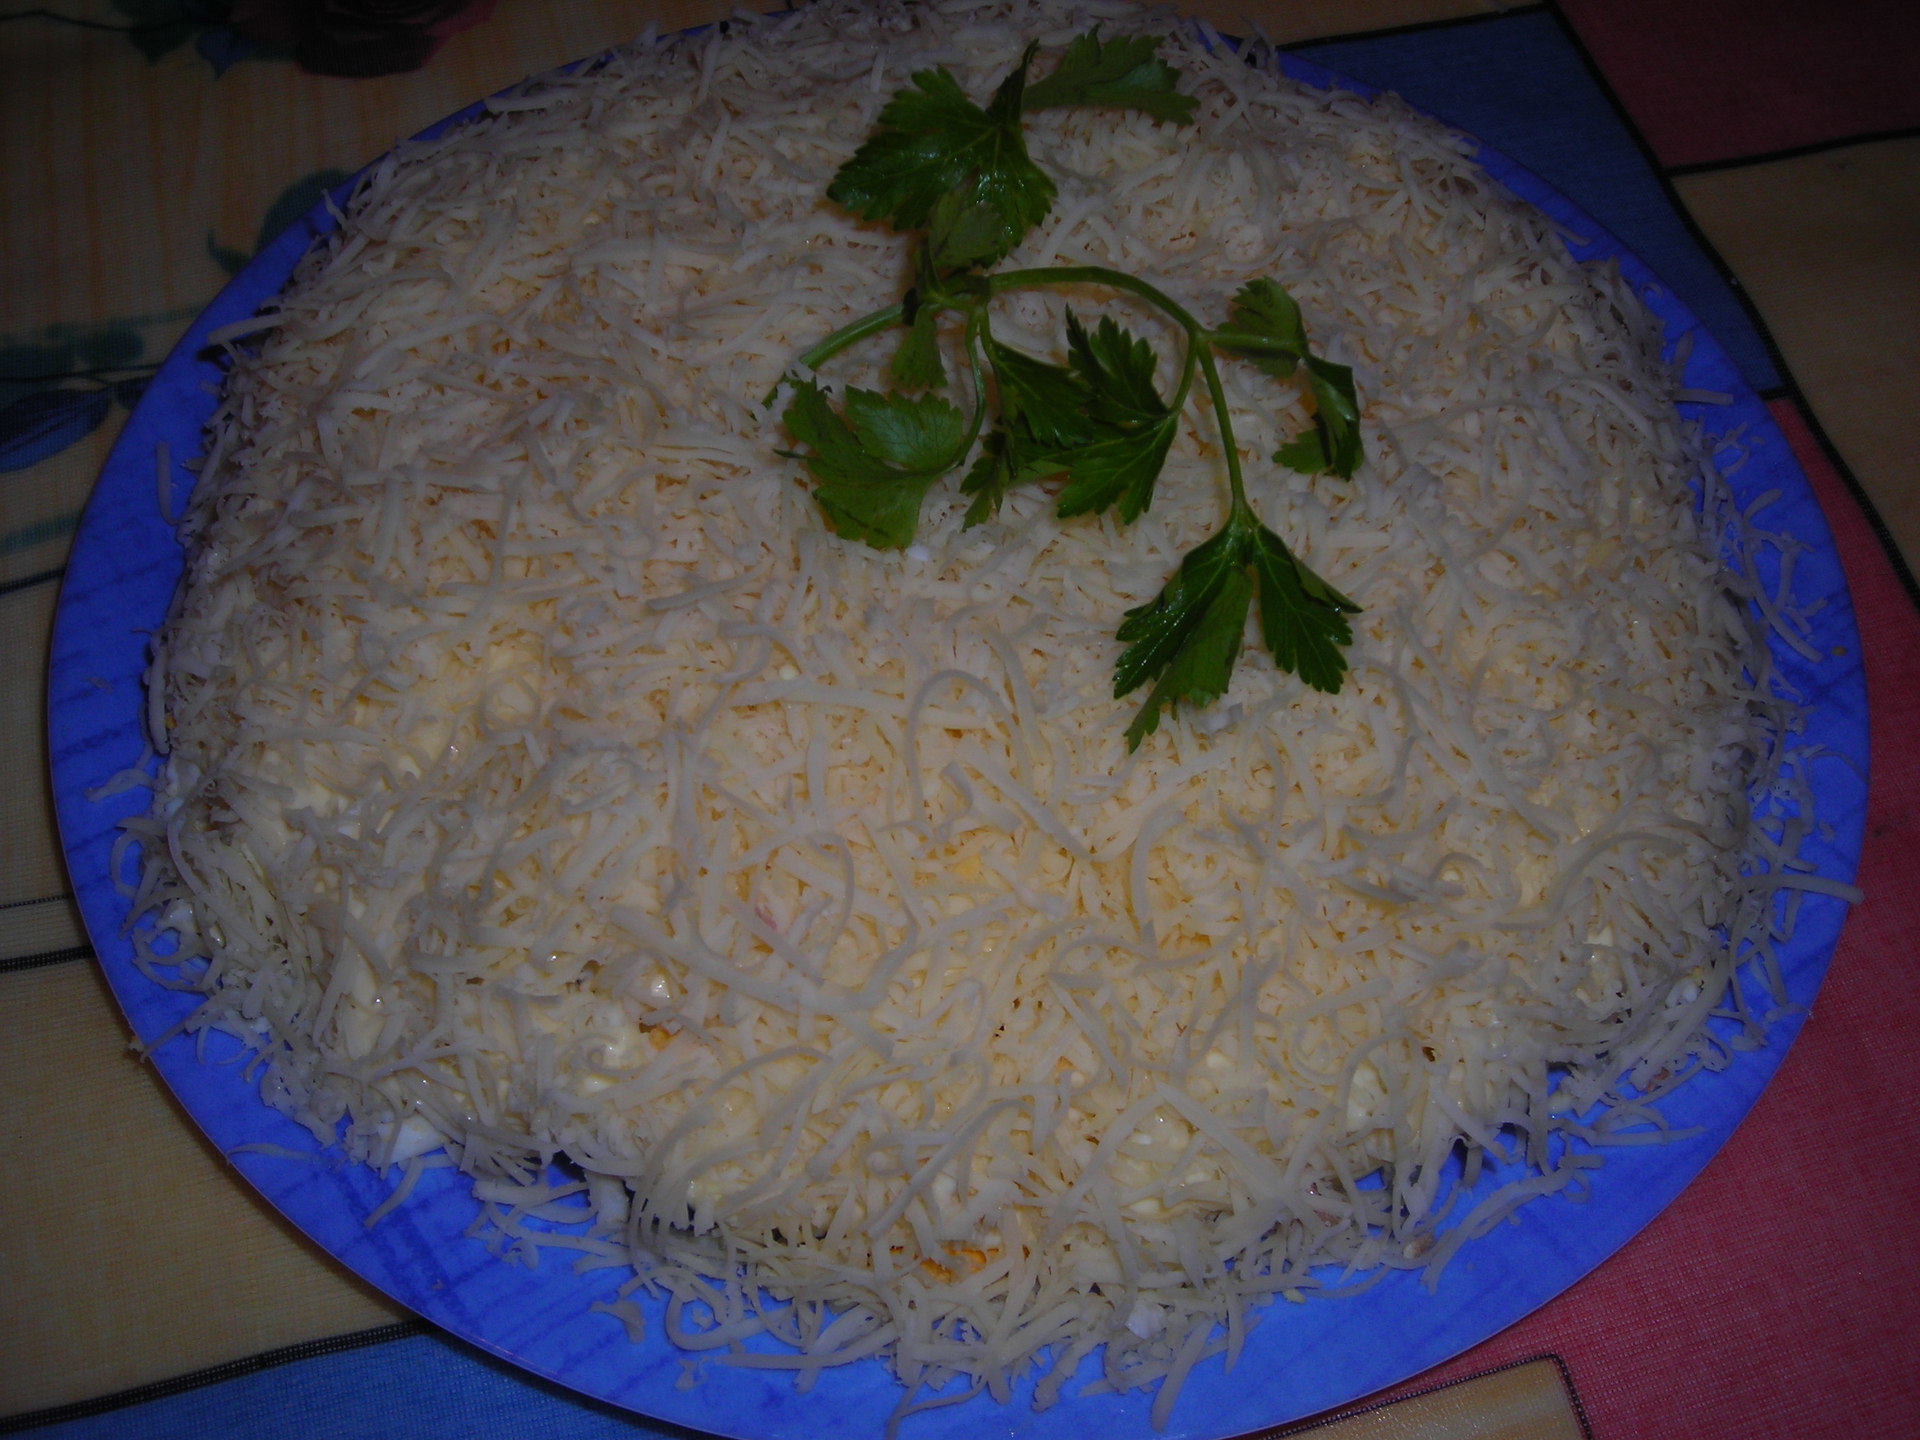 Салат мужской каприз классический рецепт с фото пошагово